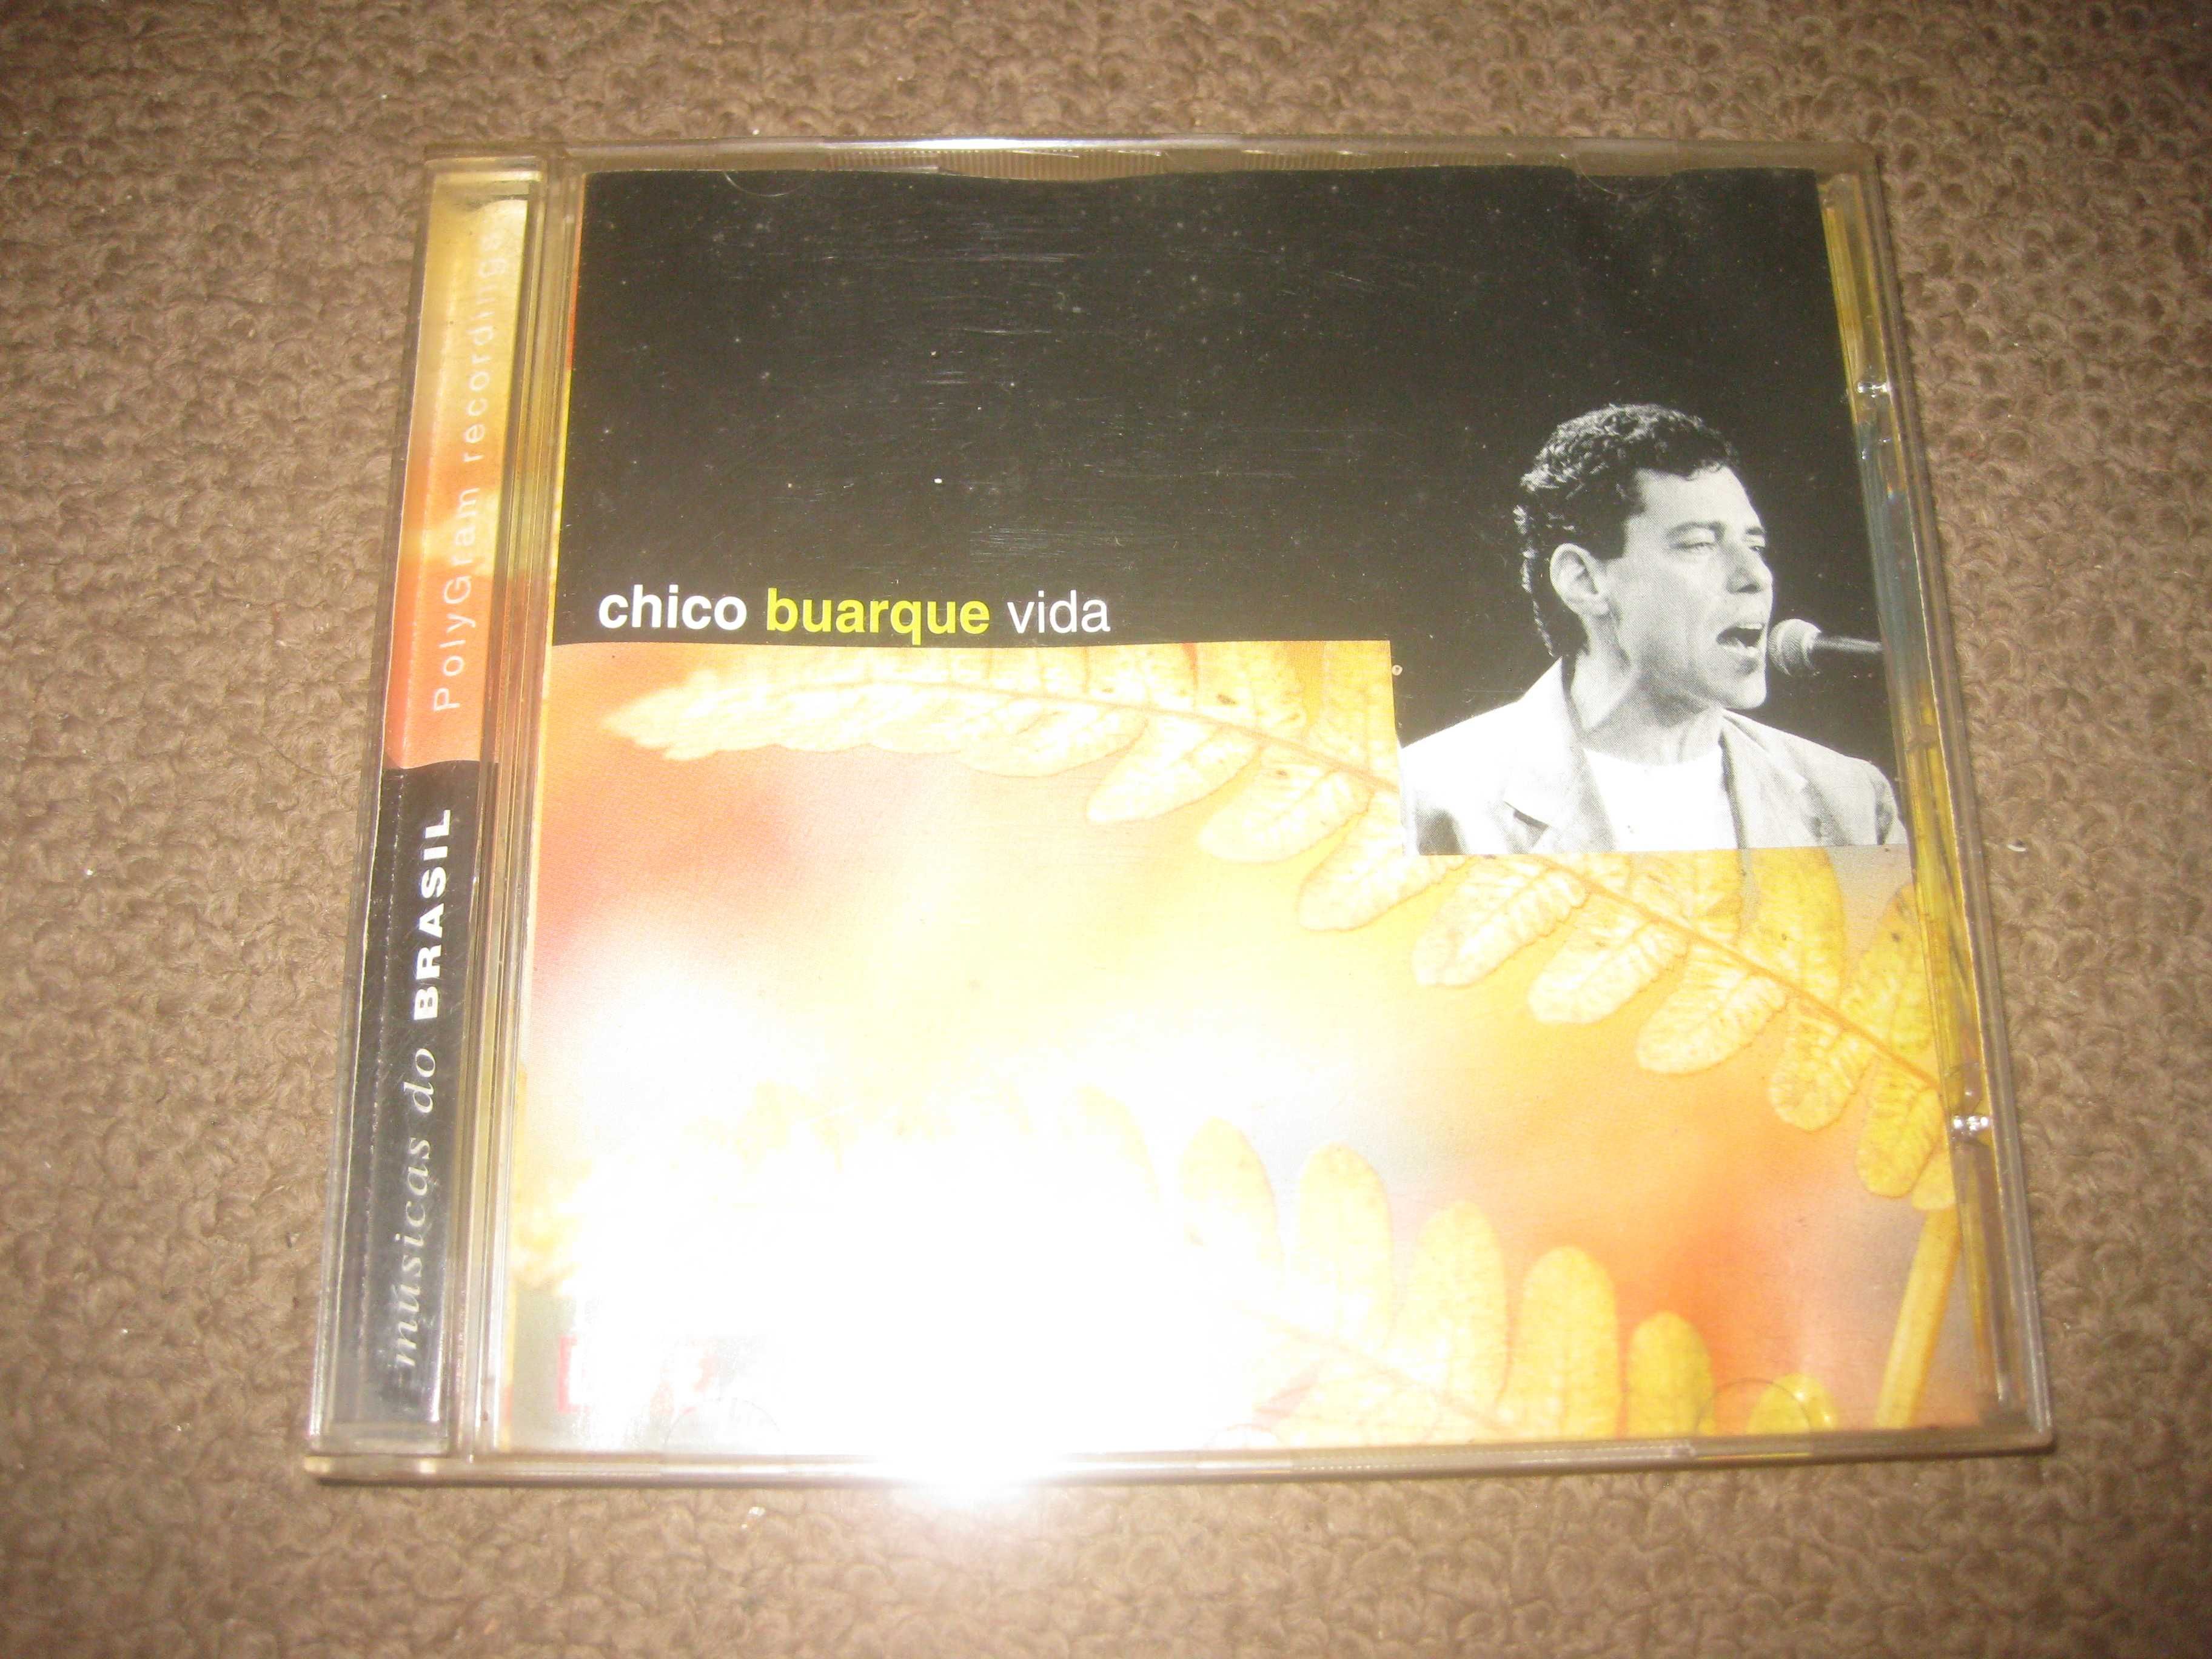 CD do Chico Buarque "Vida"